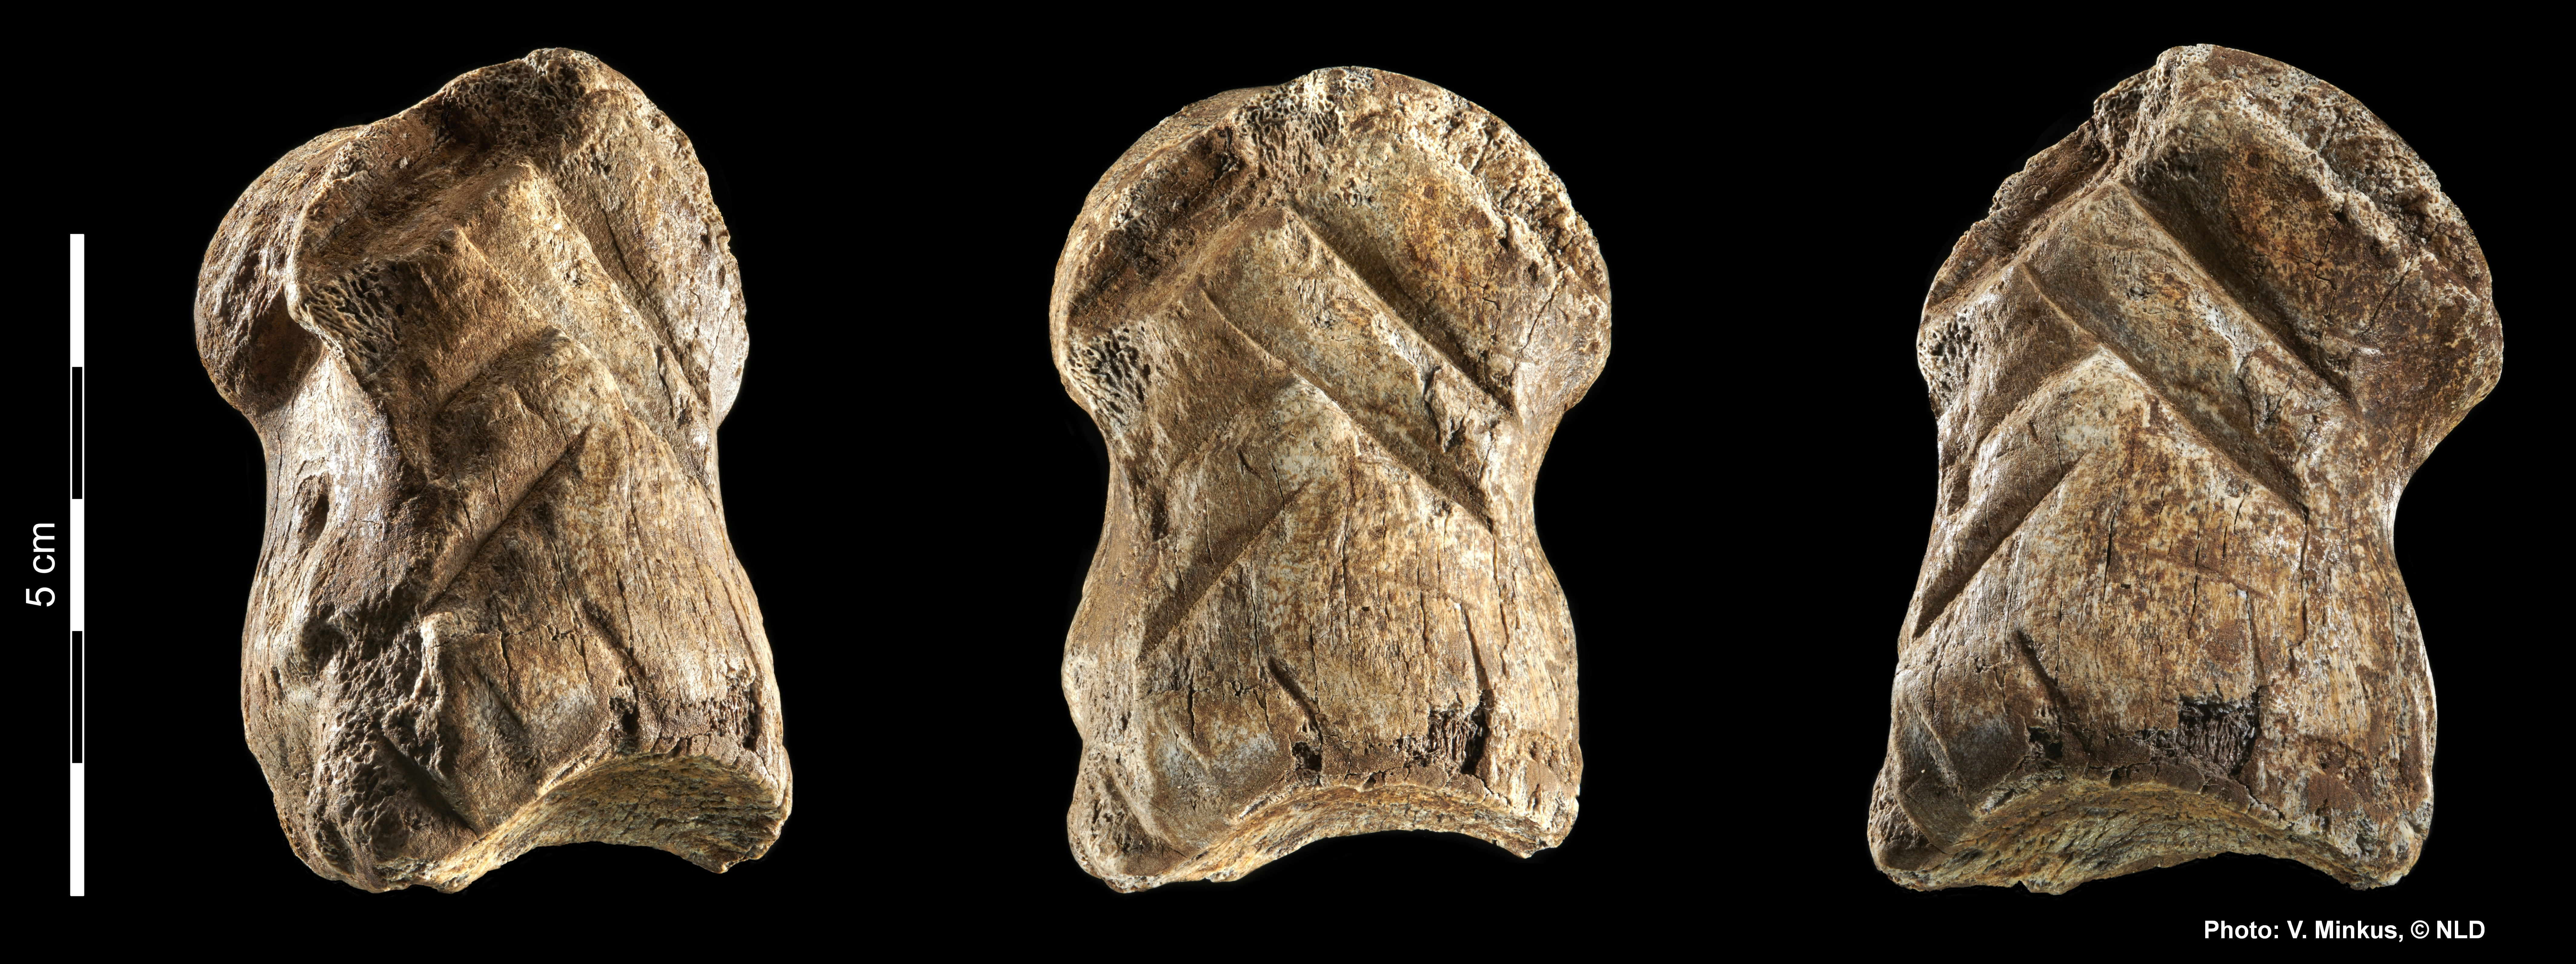 Das Bild zeigt ein Vergrößerte Aufnahme des Riesenhirschknochens mit Einritzungen des Neandertalers.